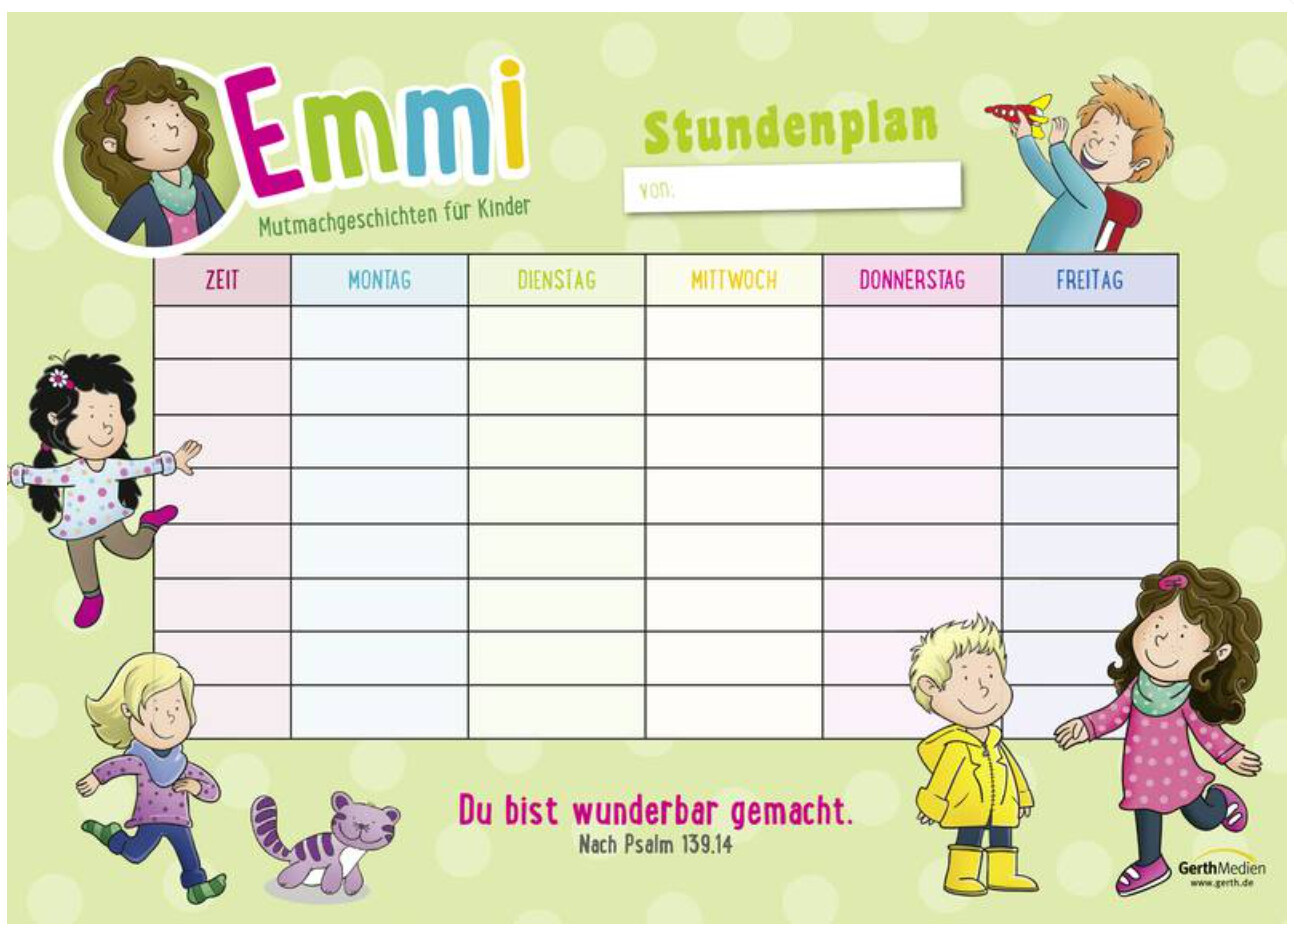 Stundenplan für die Grundschule von Emmi und ihre Freunde